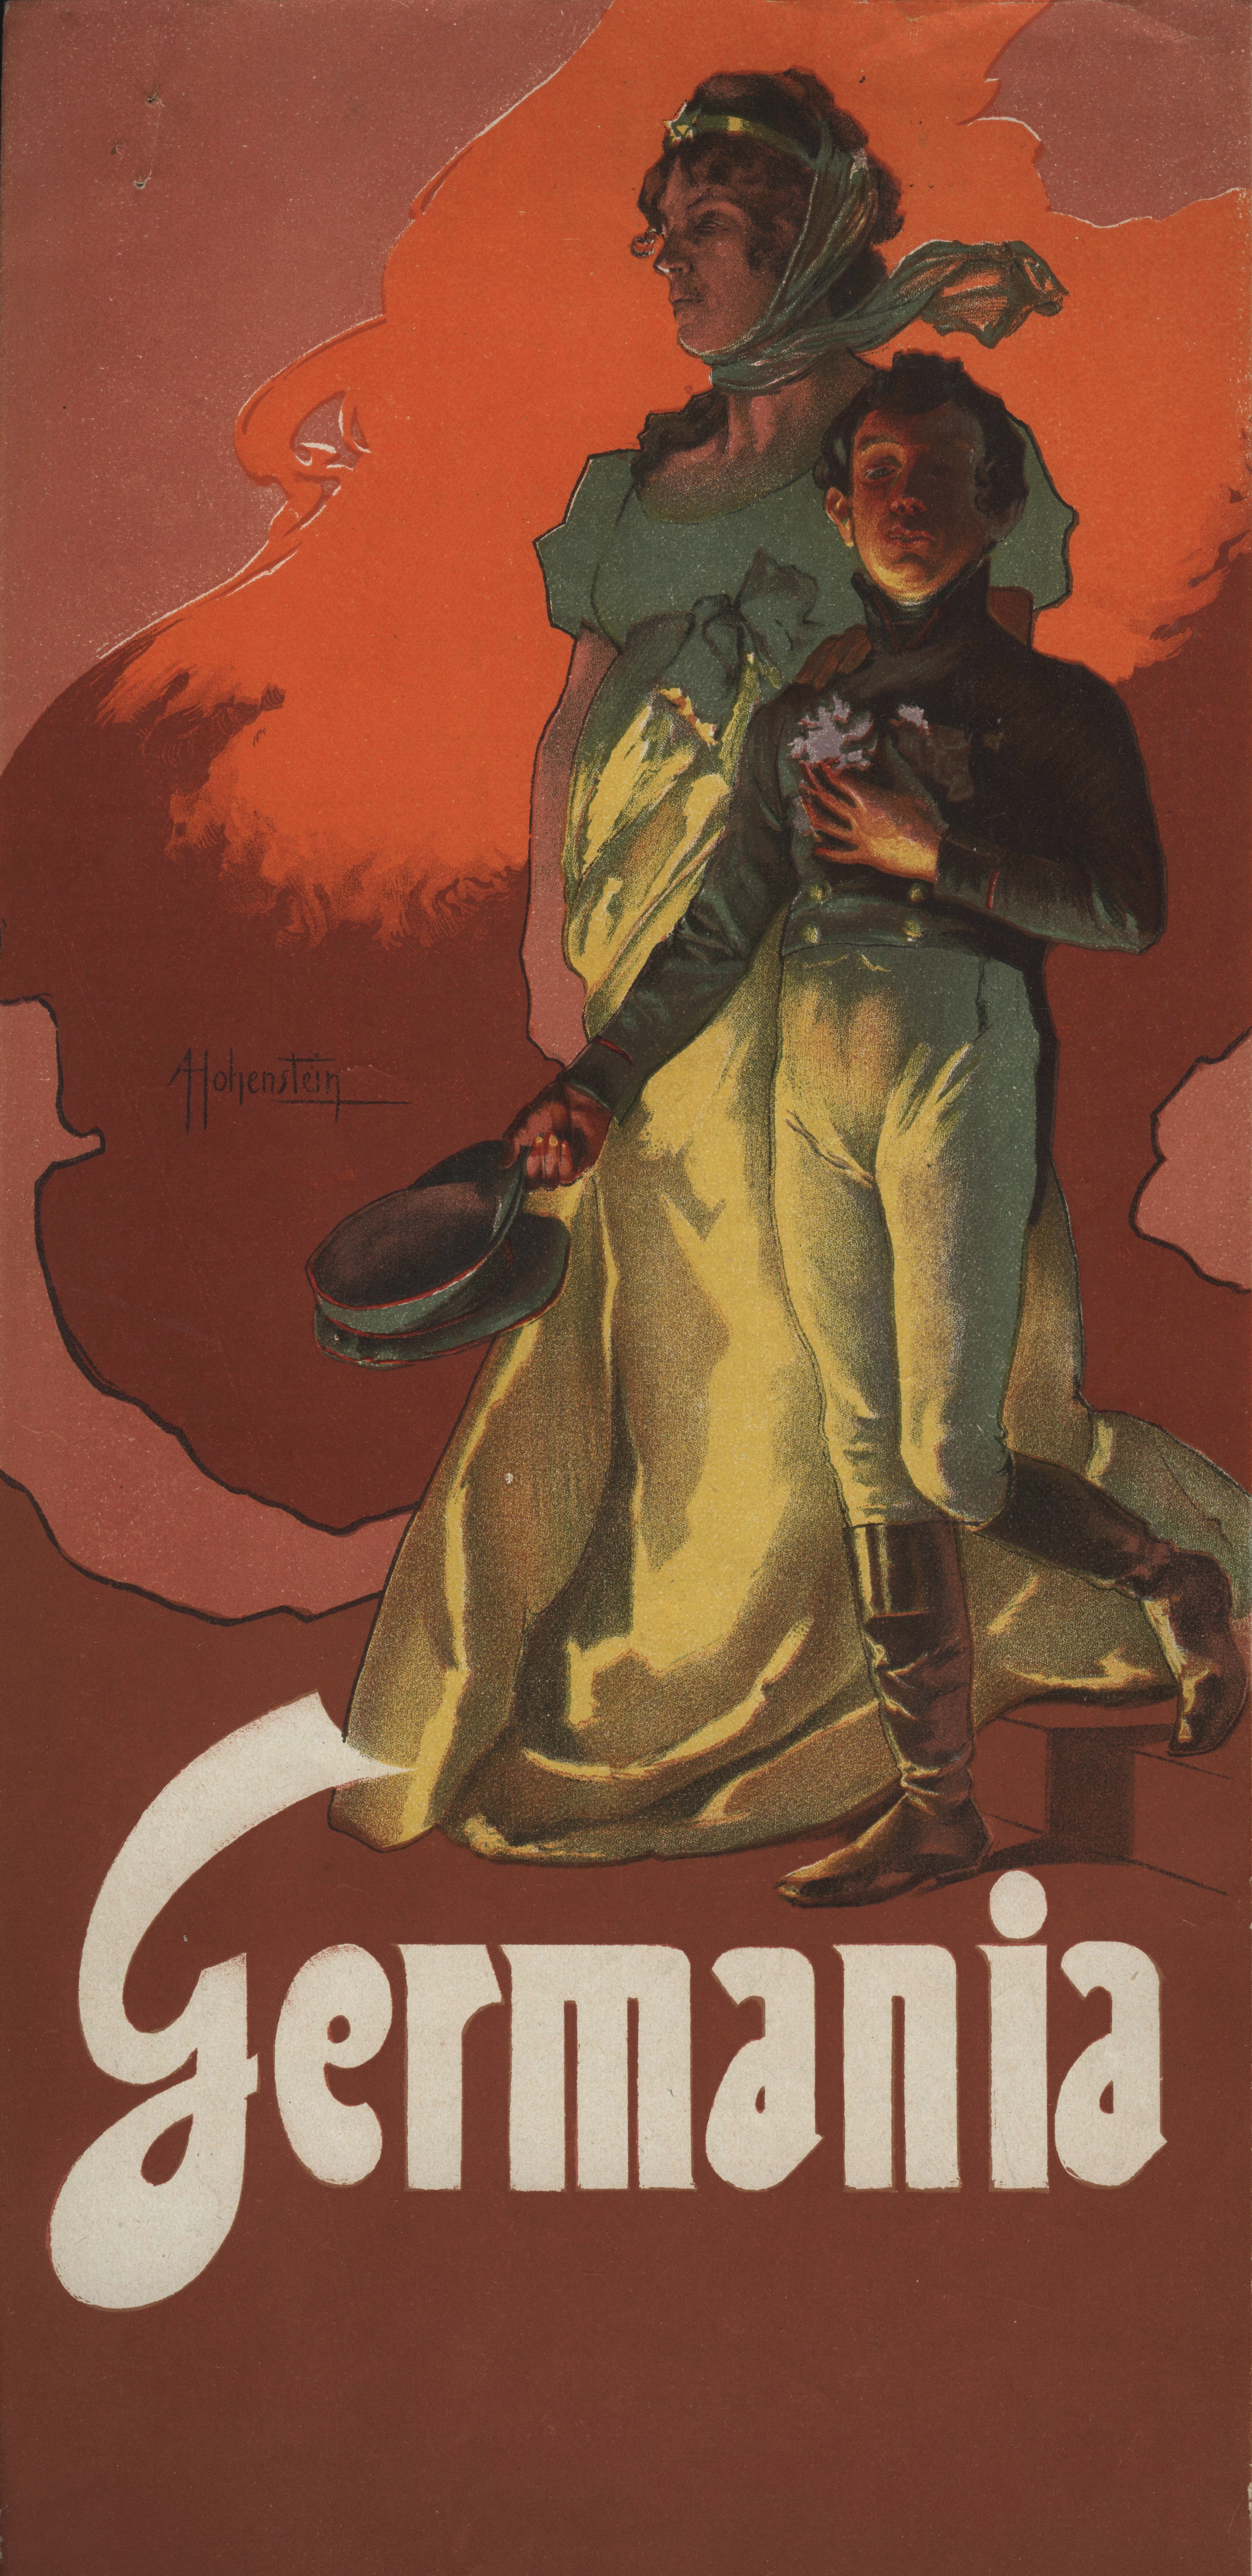 Cartoline di Germania illustrate da Leopoldo Metlicovitz, pubblicate da Ricordi per la prima esecuzione dell'opera